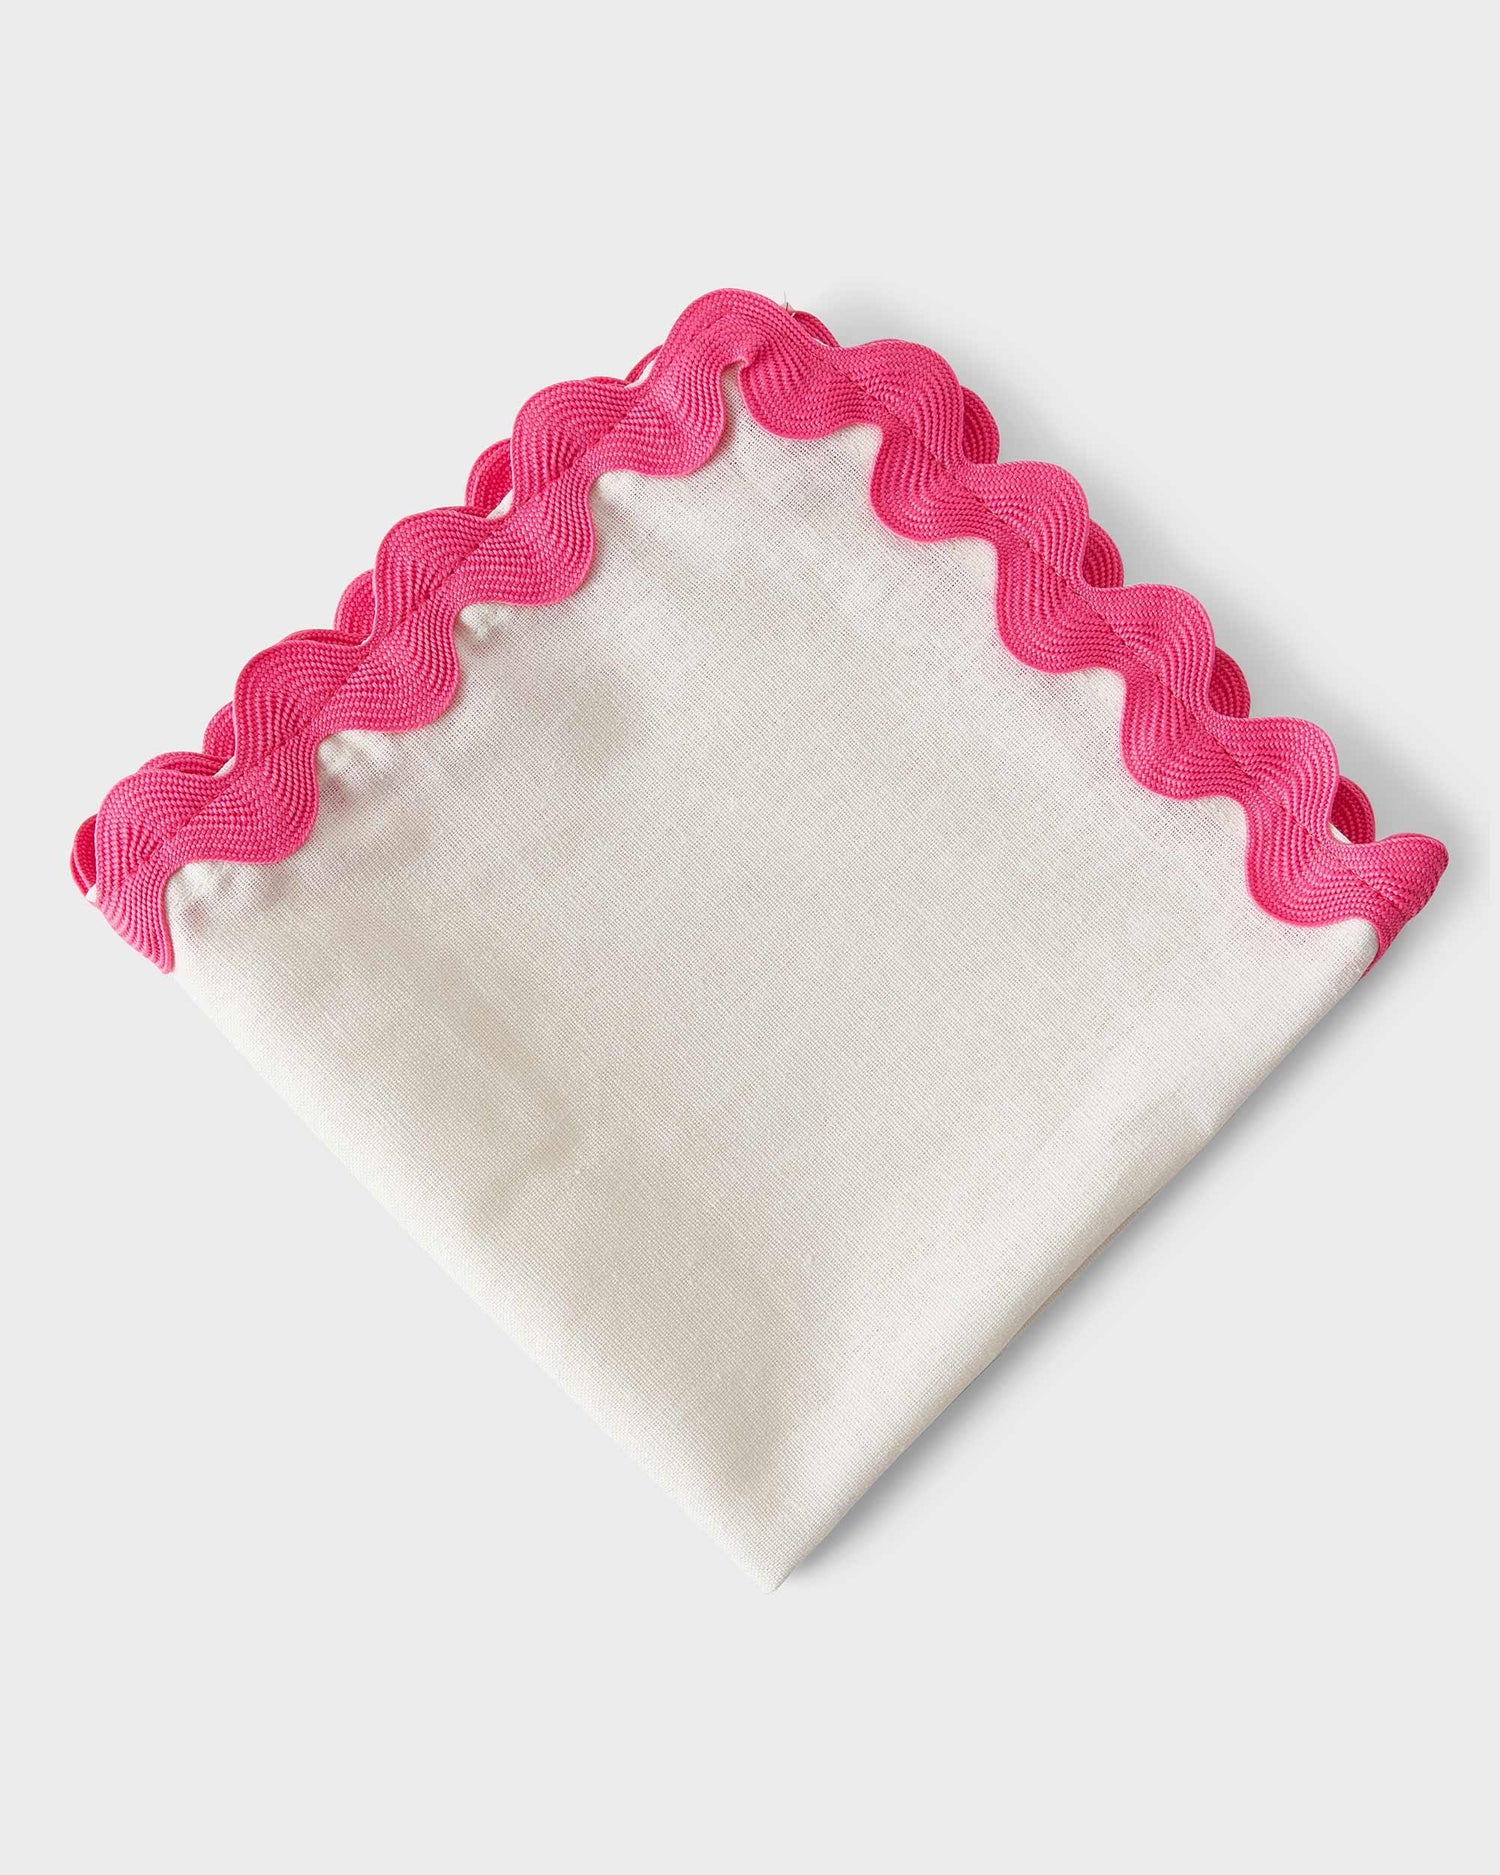 Linen Napkin - Pink ribbon - 40x40cm - Von Home